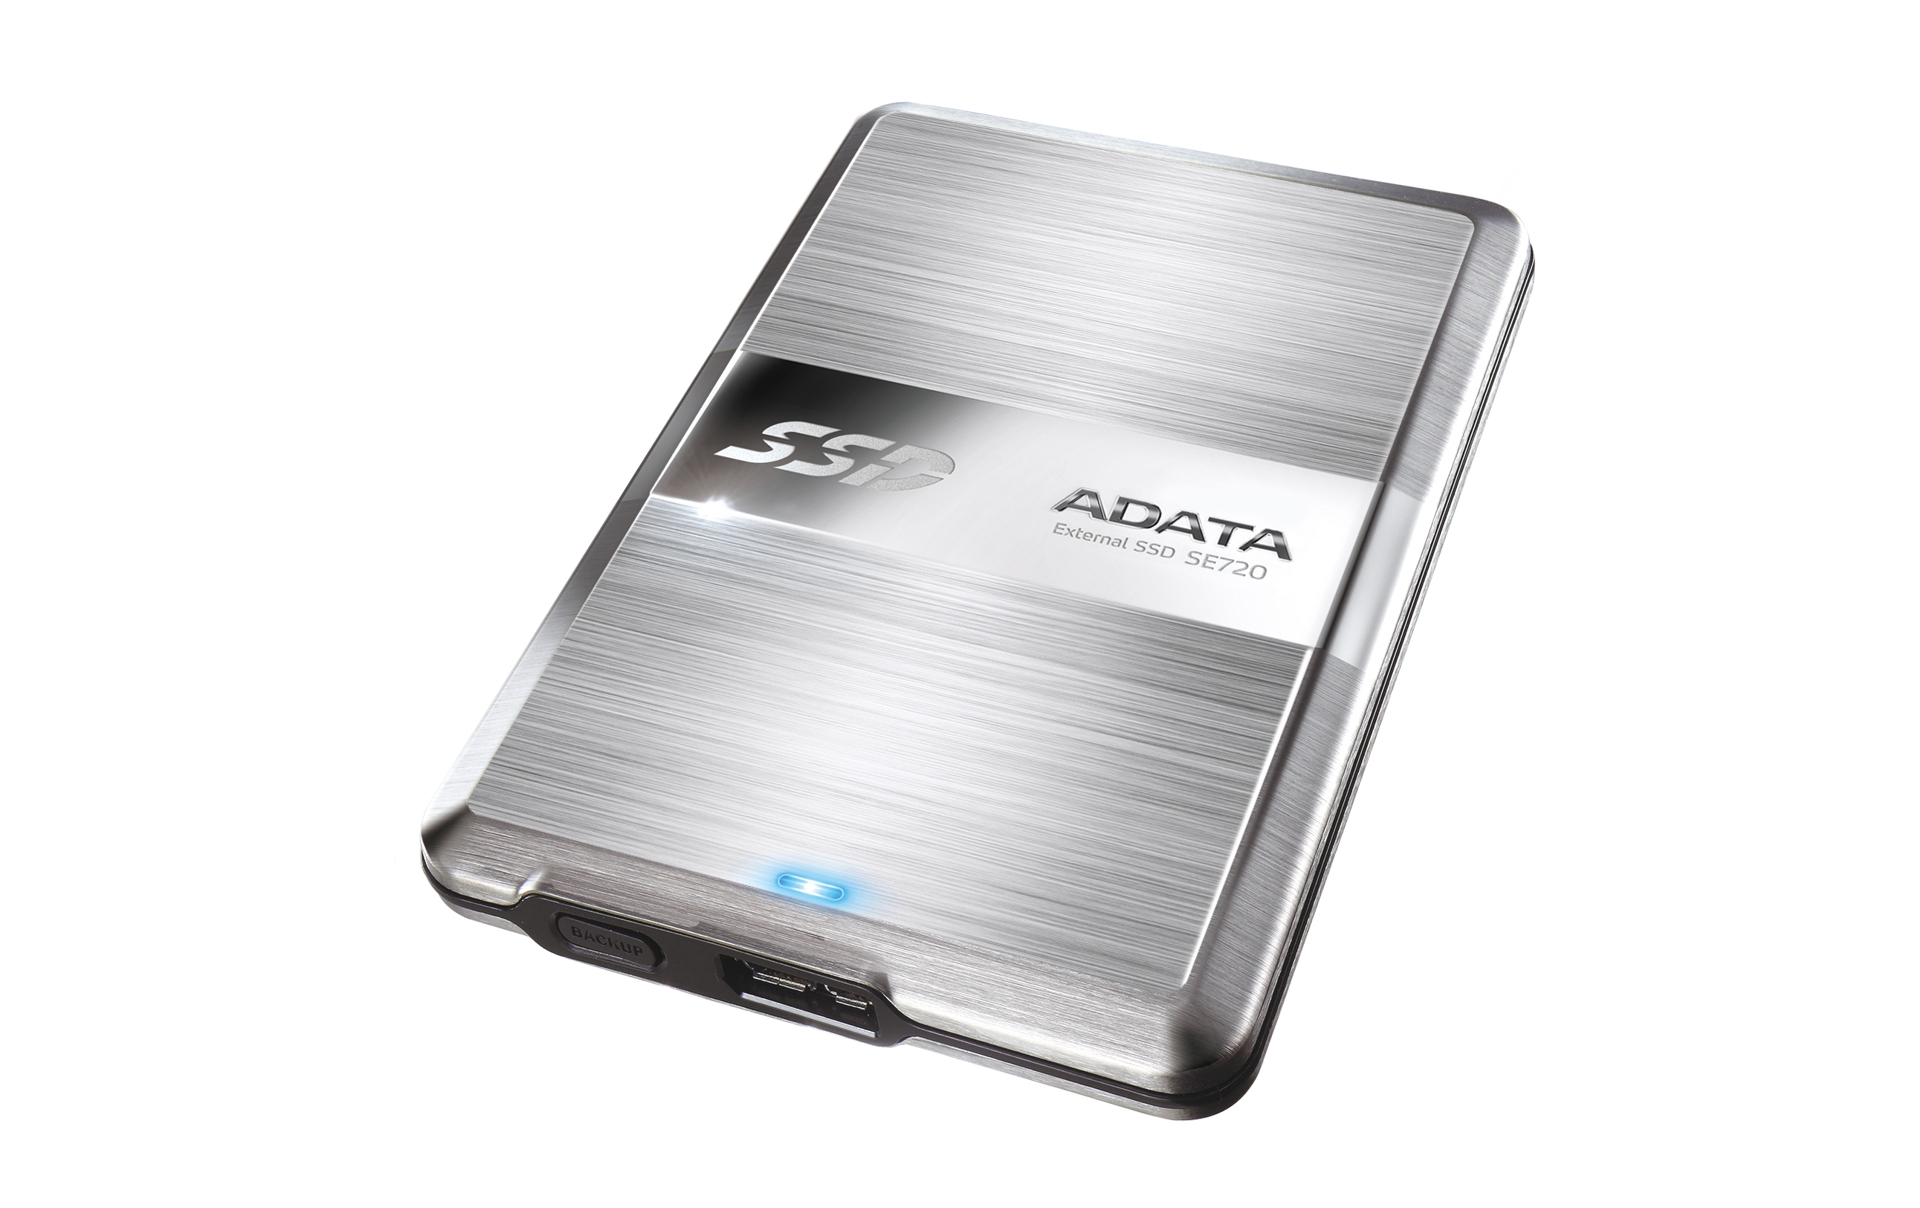 Immagine pubblicata in relazione al seguente contenuto: ADATA lancia l'unit SSD esterna USB 3.0 DashDrive Elite SE720 | Nome immagine: news20232_ADATA-DashDrive-Elite-SE720_1.jpg